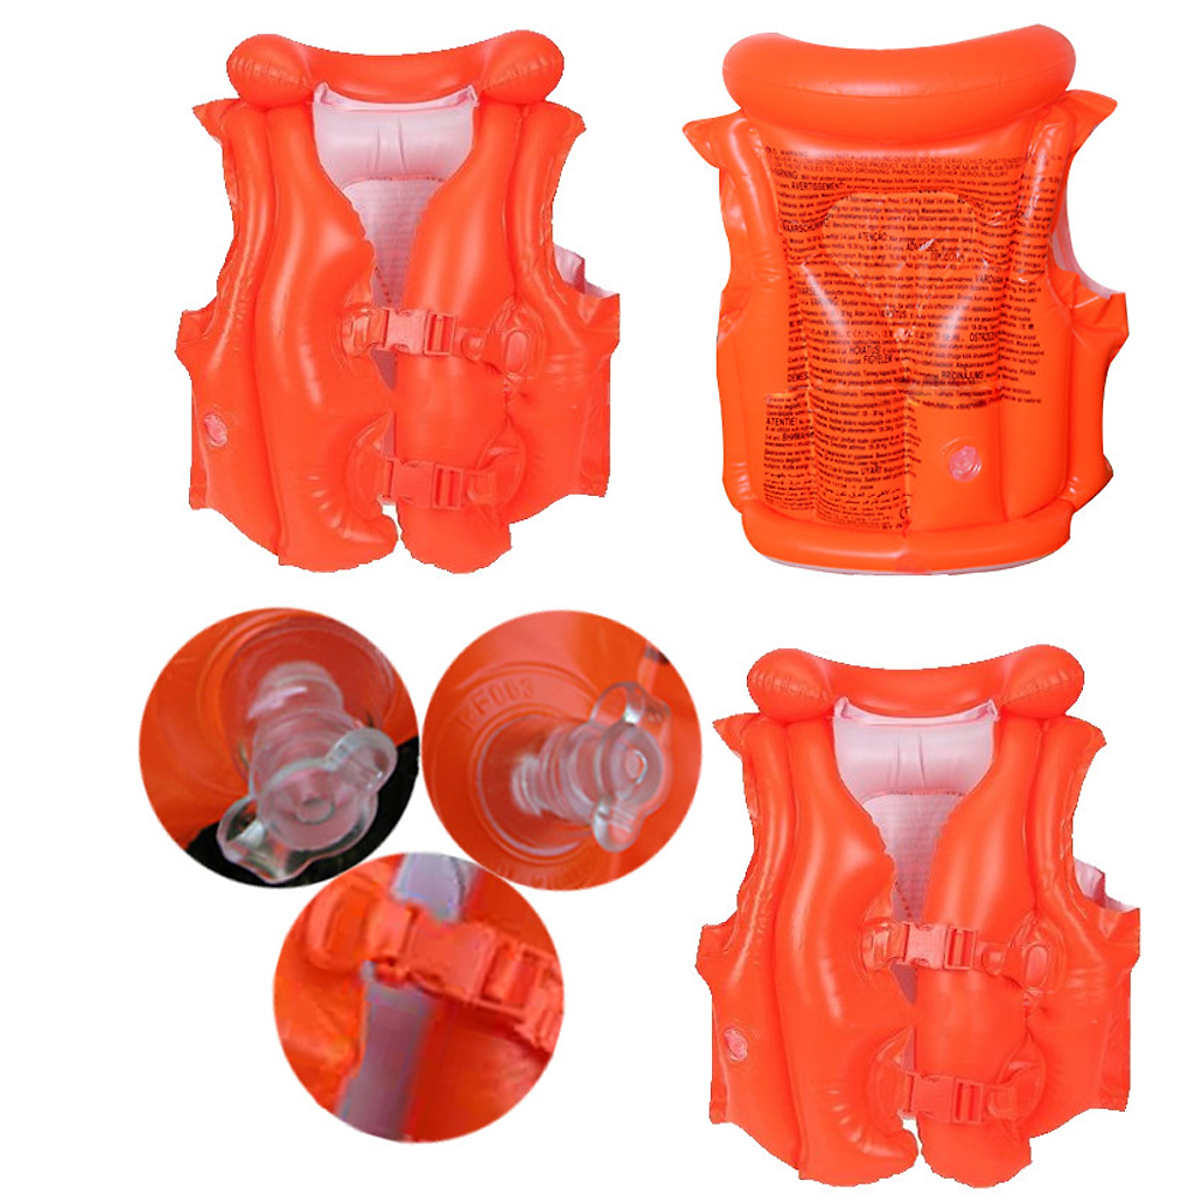 Áo phao tập bơi Yesure Step 2 tiện dụng dành cho bé 3-6 tuổi(<30 kg), nhựa PVC màu cam bắt mắt an toàn cho bé, không thấm nước, dễ dàng vệ sinh - Hàng Chính Hãng Tặng kèm bịt tai Silicone